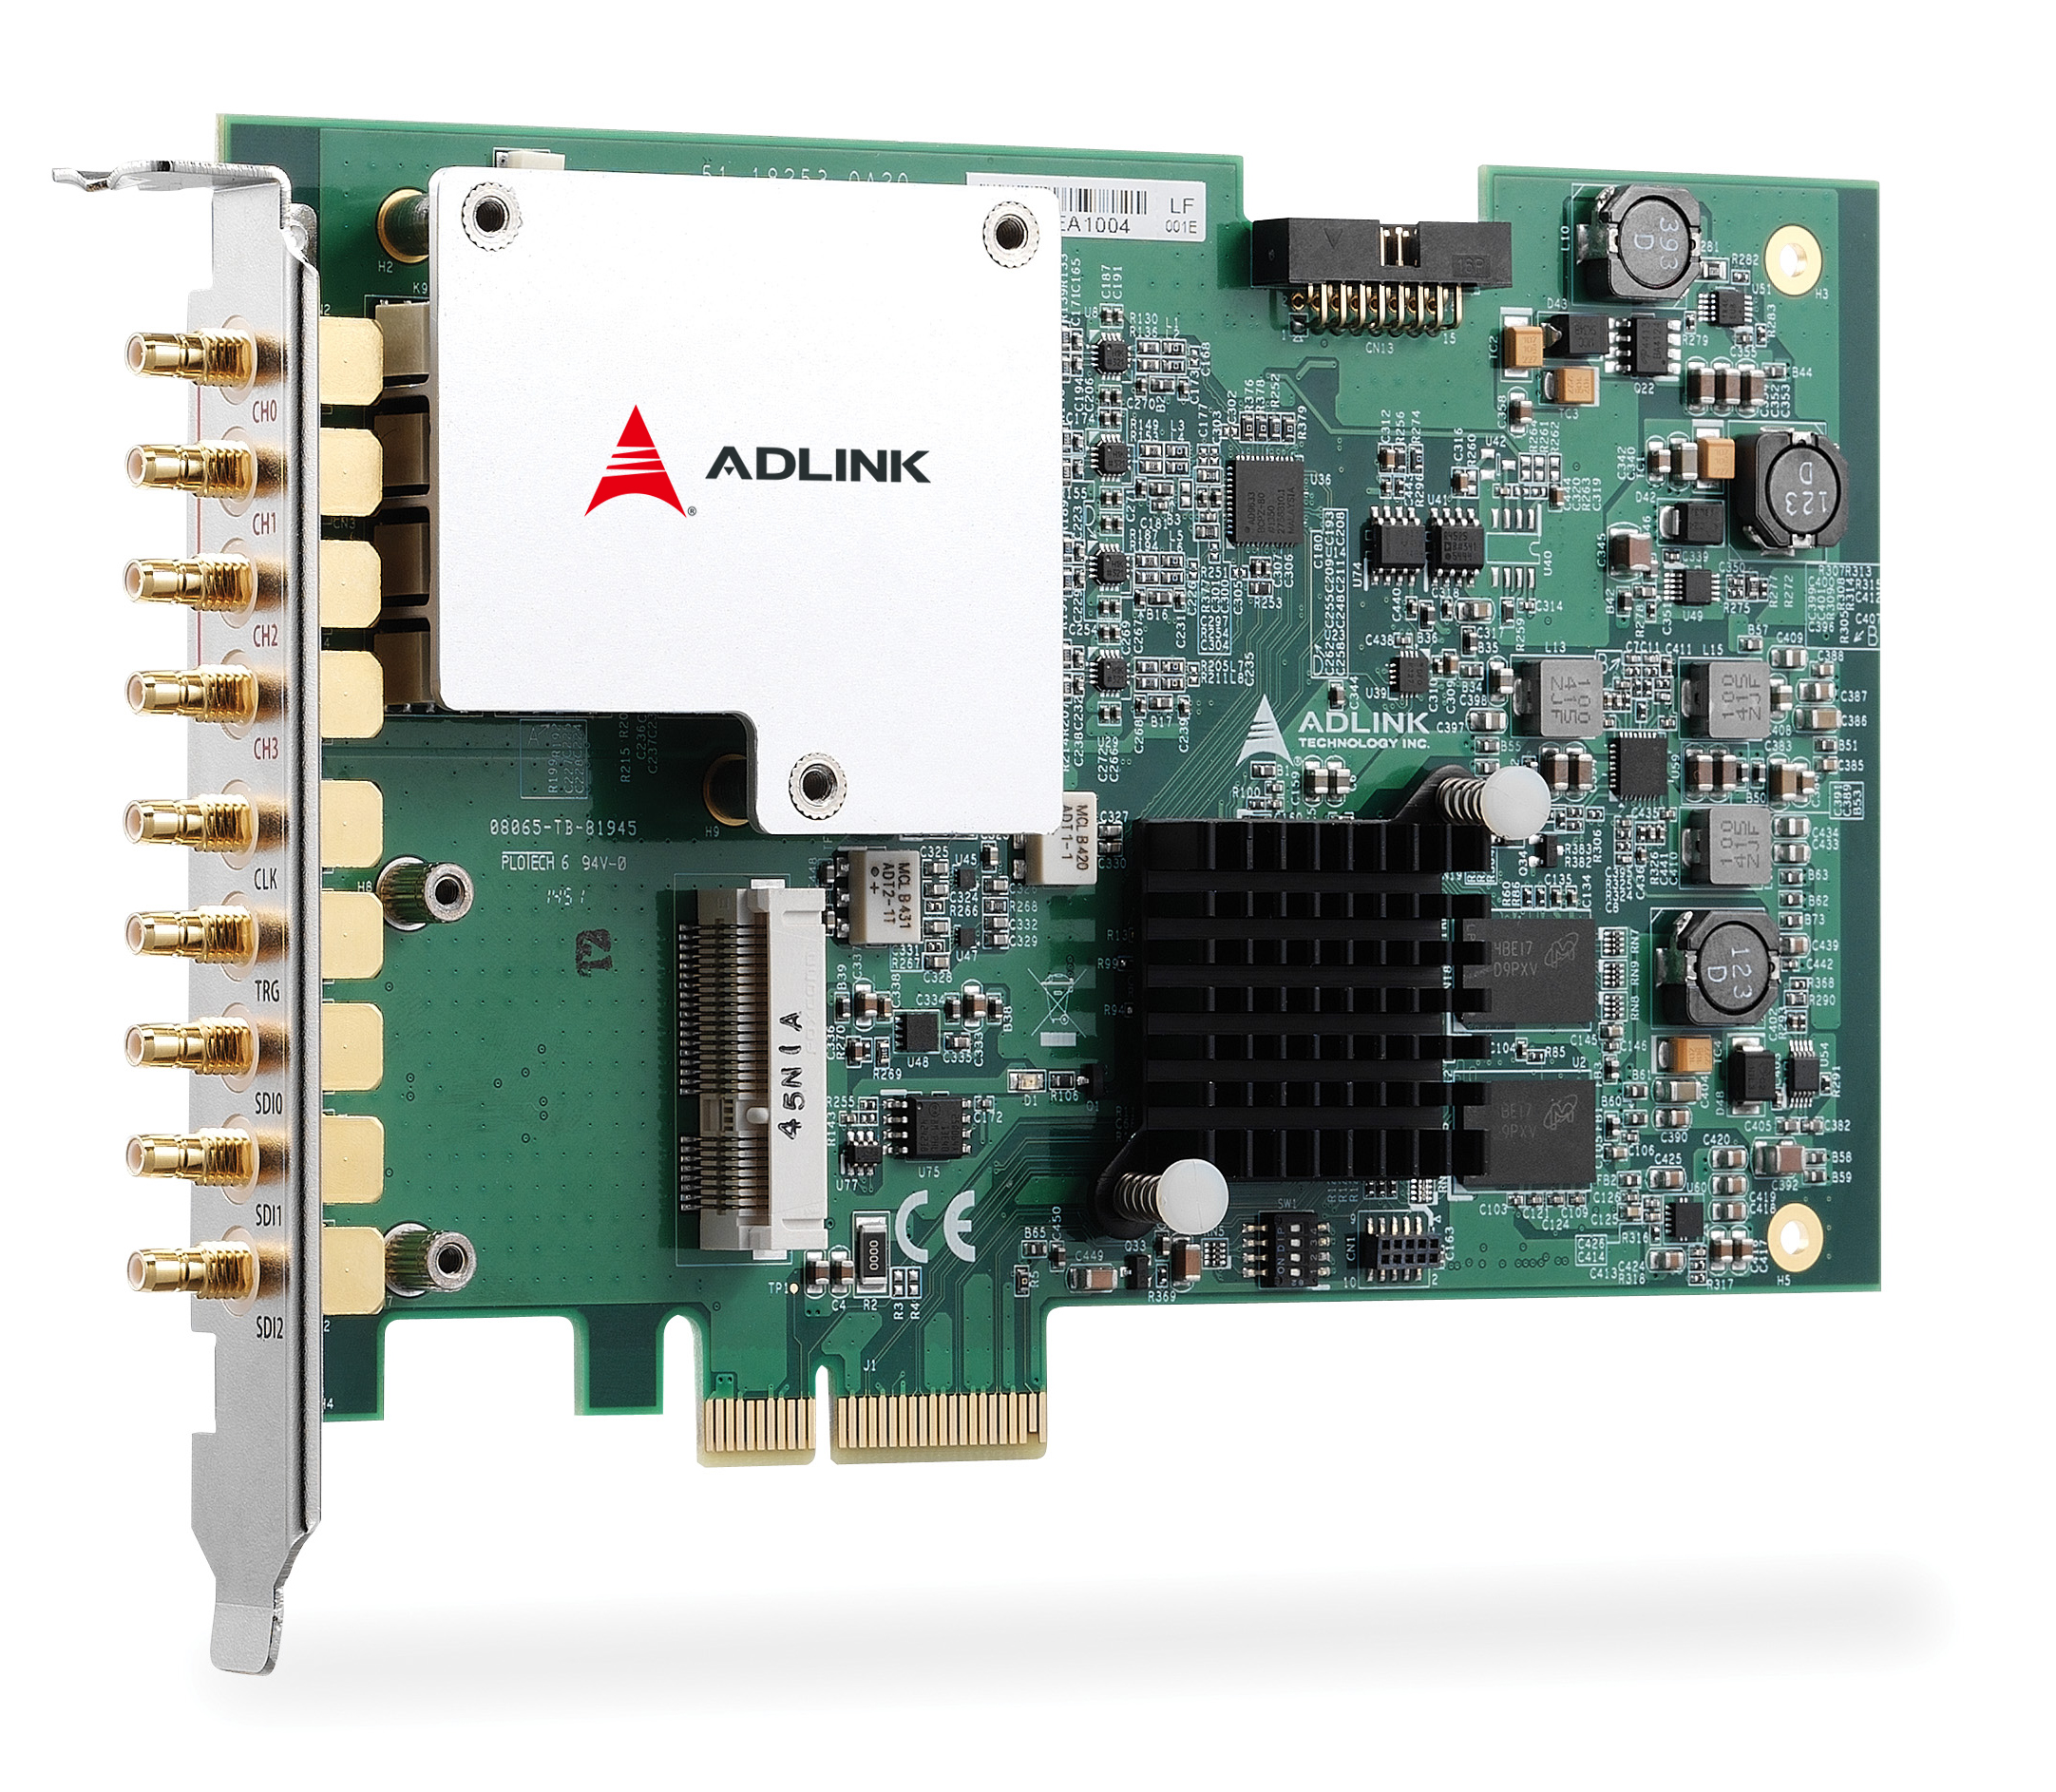 ADLINK_PCIe-9814.jpg